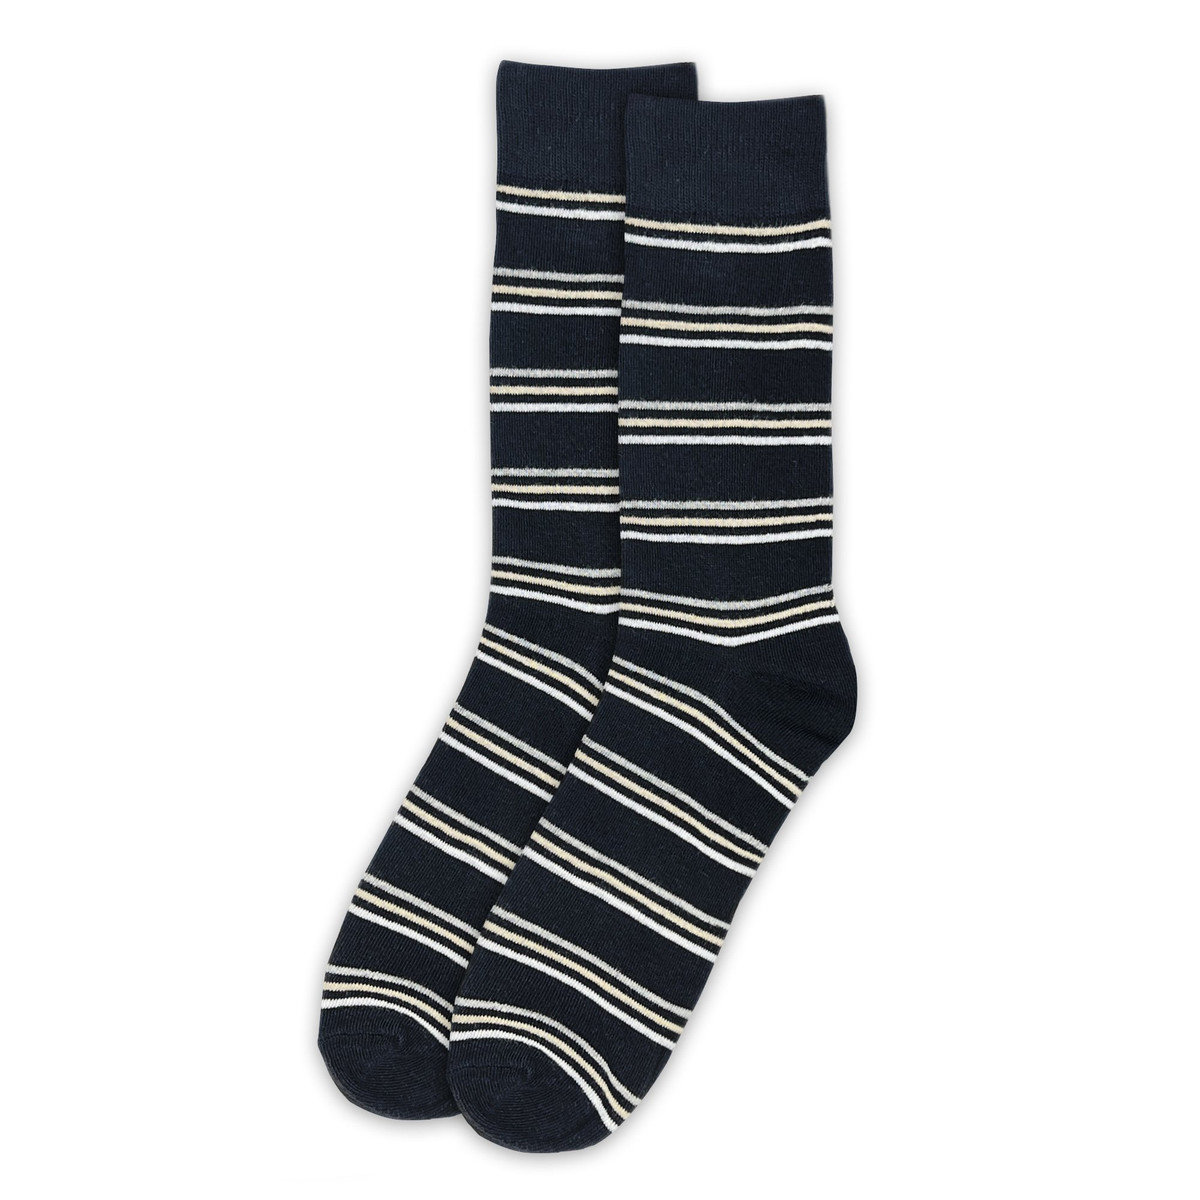 Men's 3-stripes Crew Socks - Black